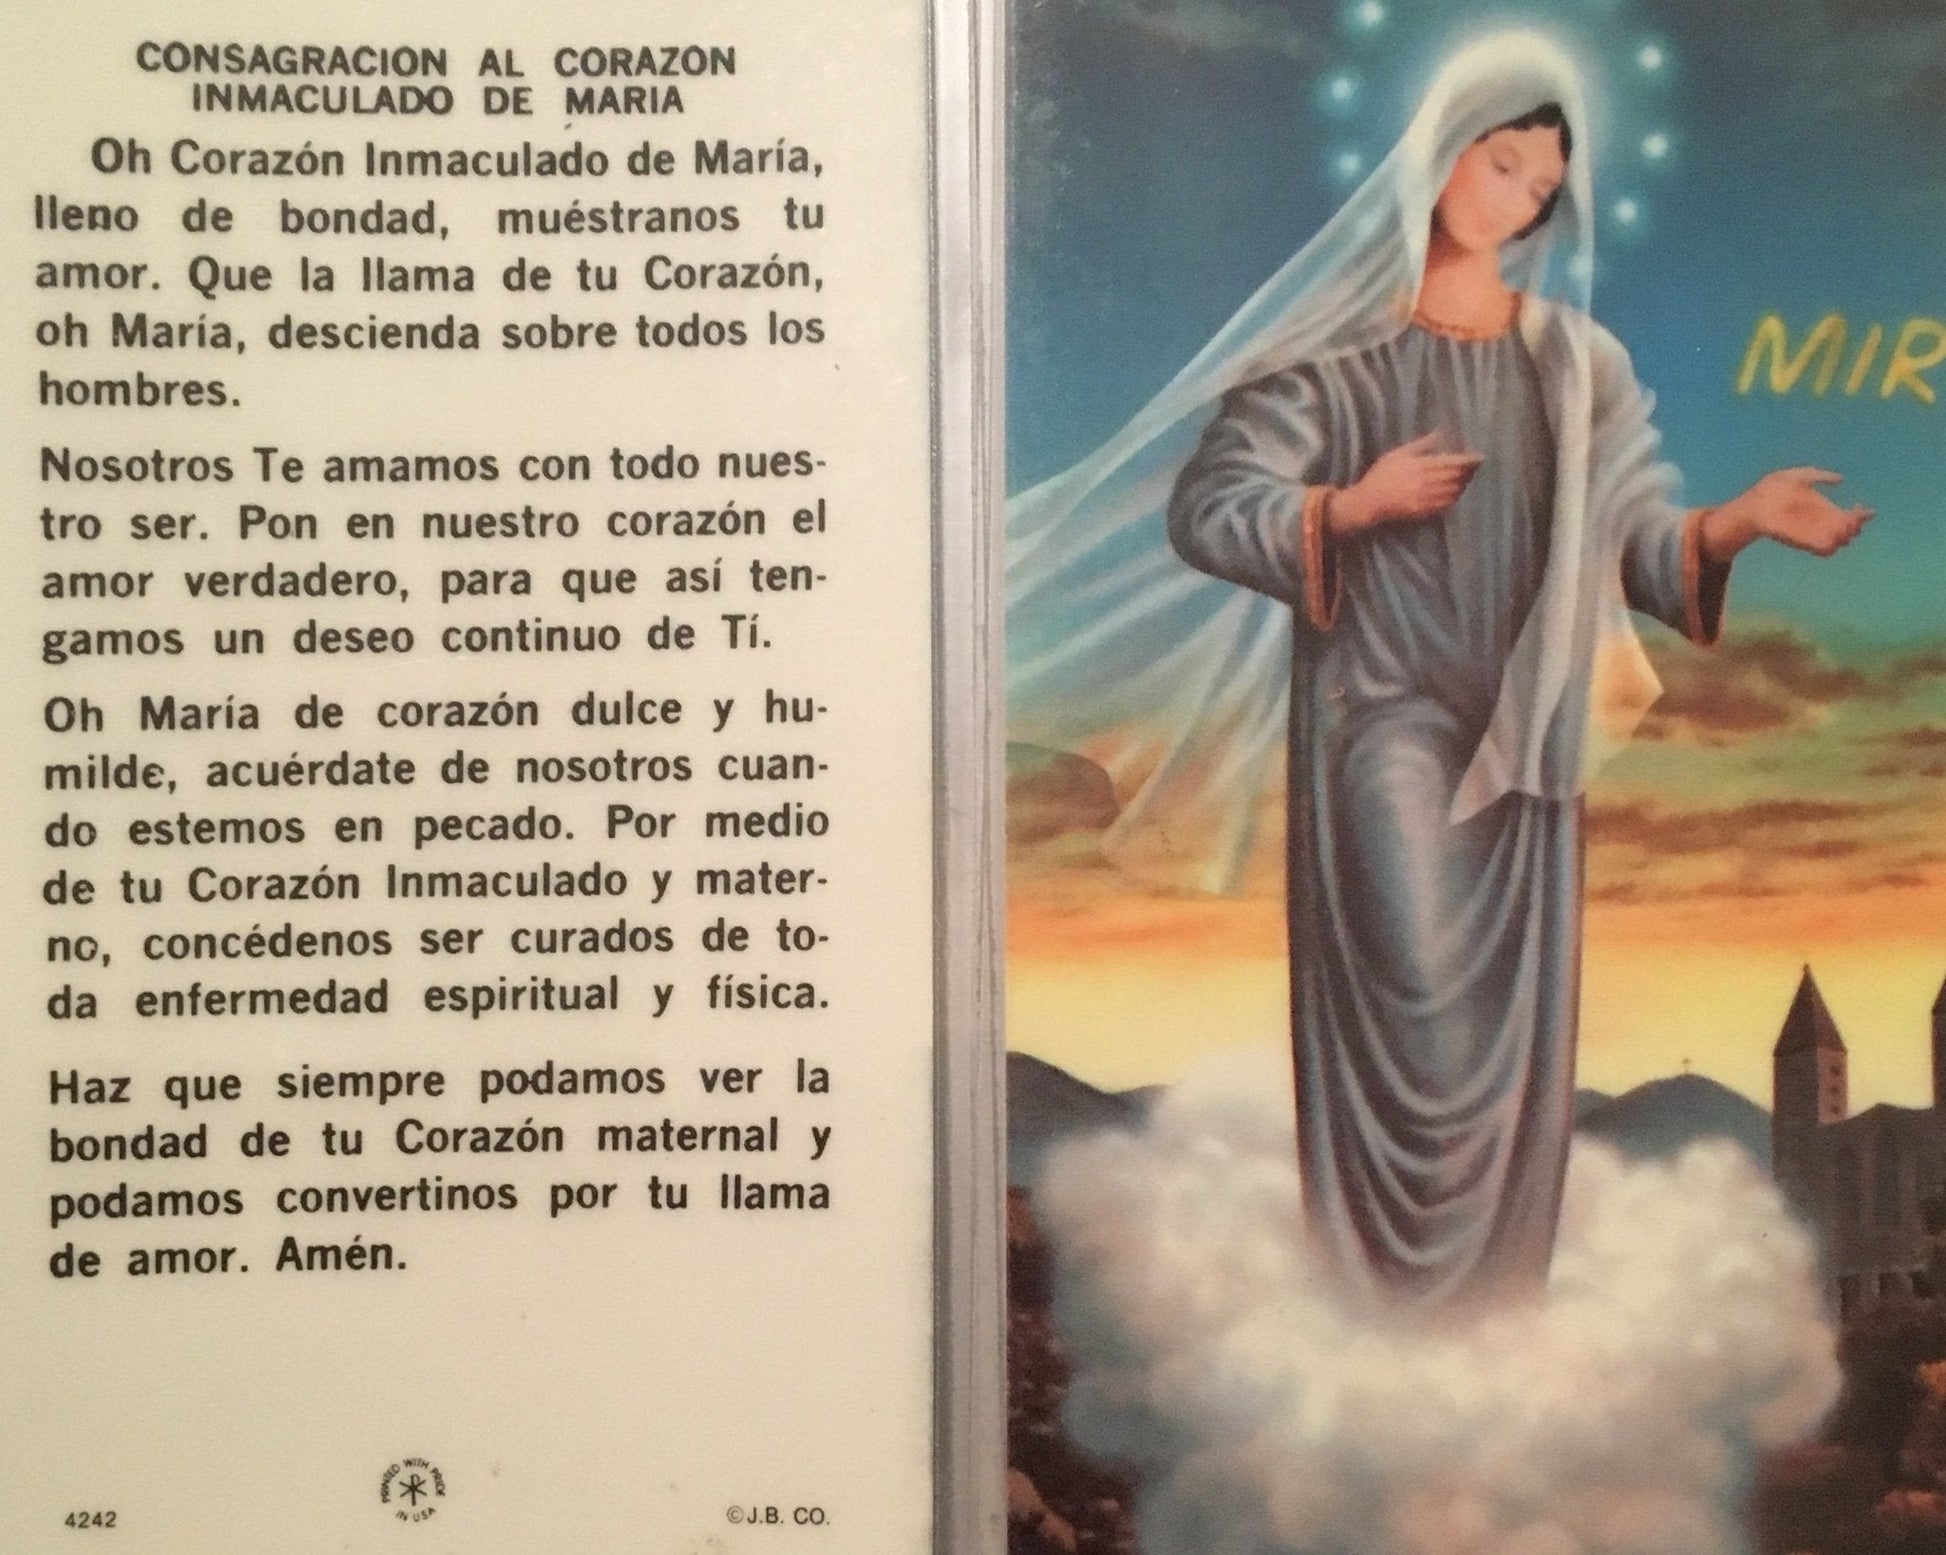 Prayer Card Consagracion Al Corazon Inmaculado De Maria SPANISH No Laminated 4242 - Ysleta Mission Gift Shop- VOTED El Paso's Best Gift Shop